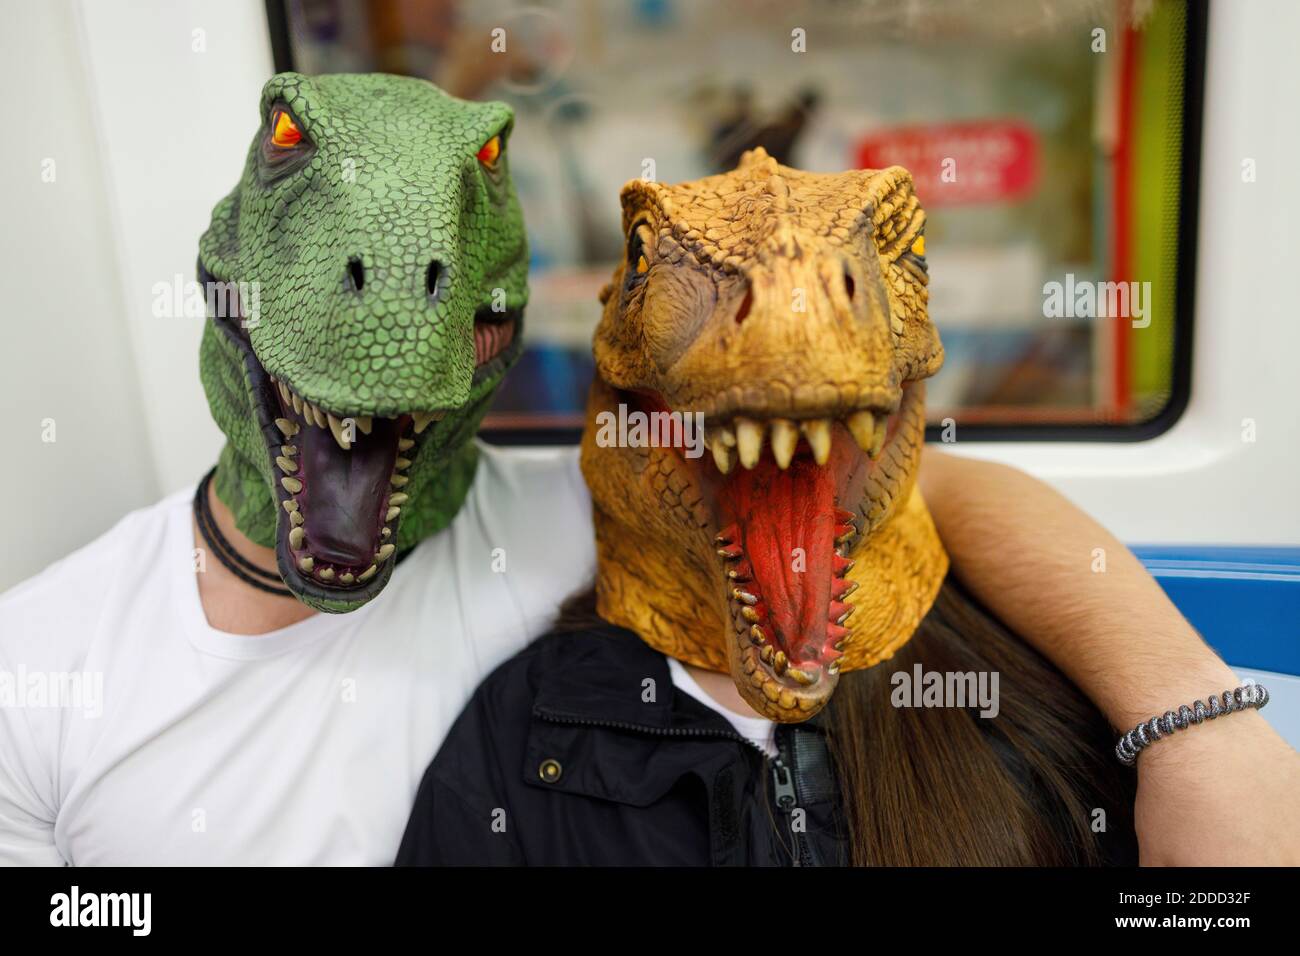 Maschera dinosauro immagini e fotografie stock ad alta risoluzione - Alamy